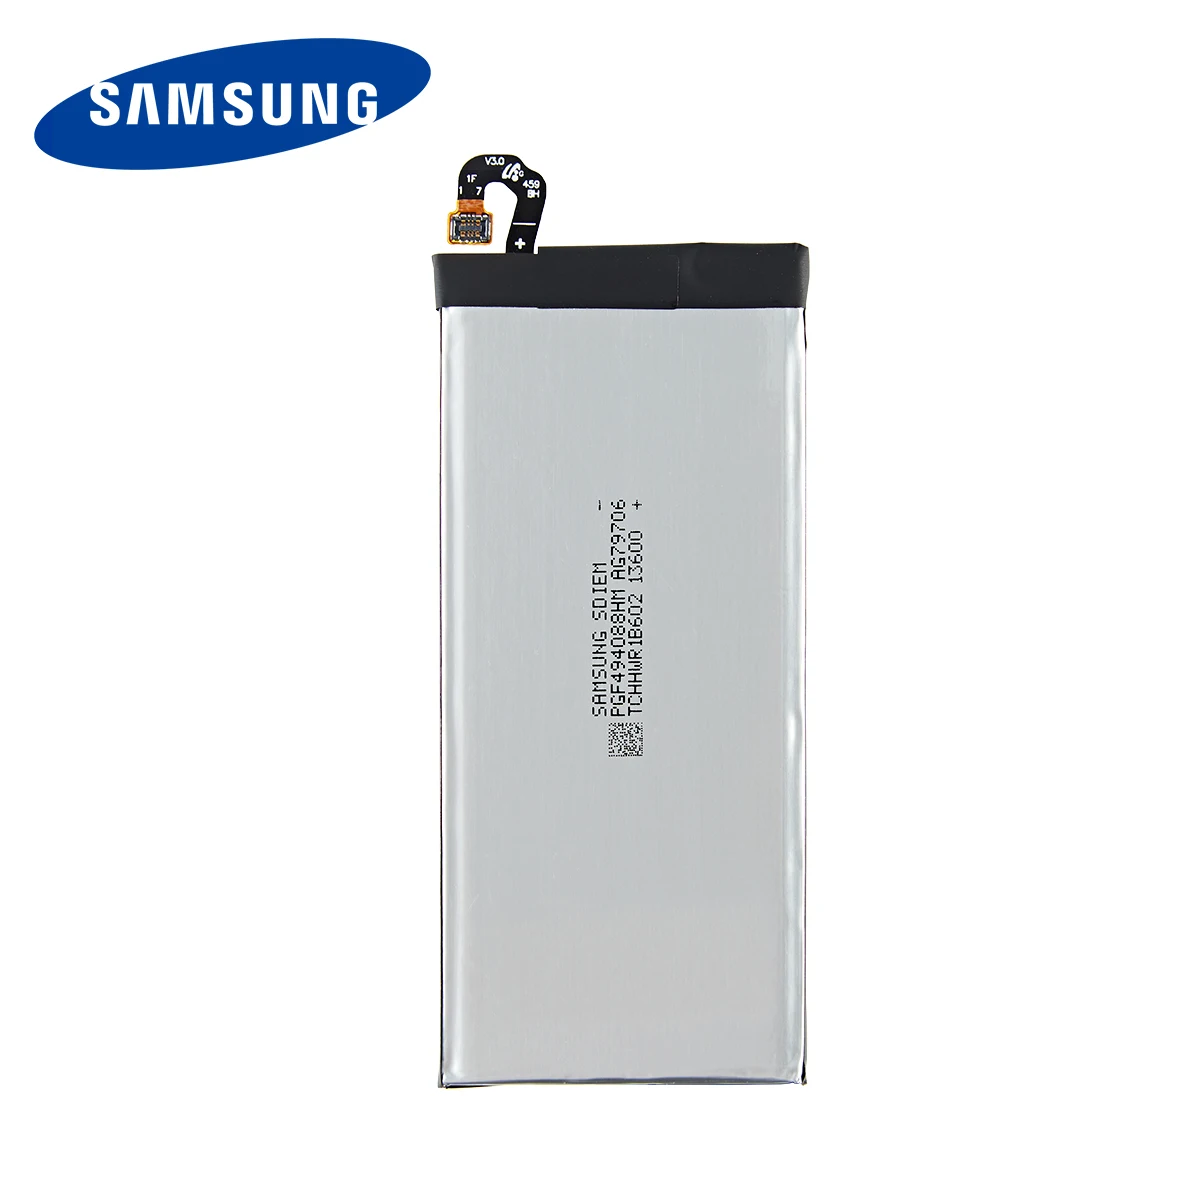 SAMSUNG Orginal EB-BJ530ABE 3000mAh Baterie pentru Samsung Galaxy J5 Pro 2017 J530 SM-J530K SM-J530F SM-J530Y Telefon Mobil +Instrumente